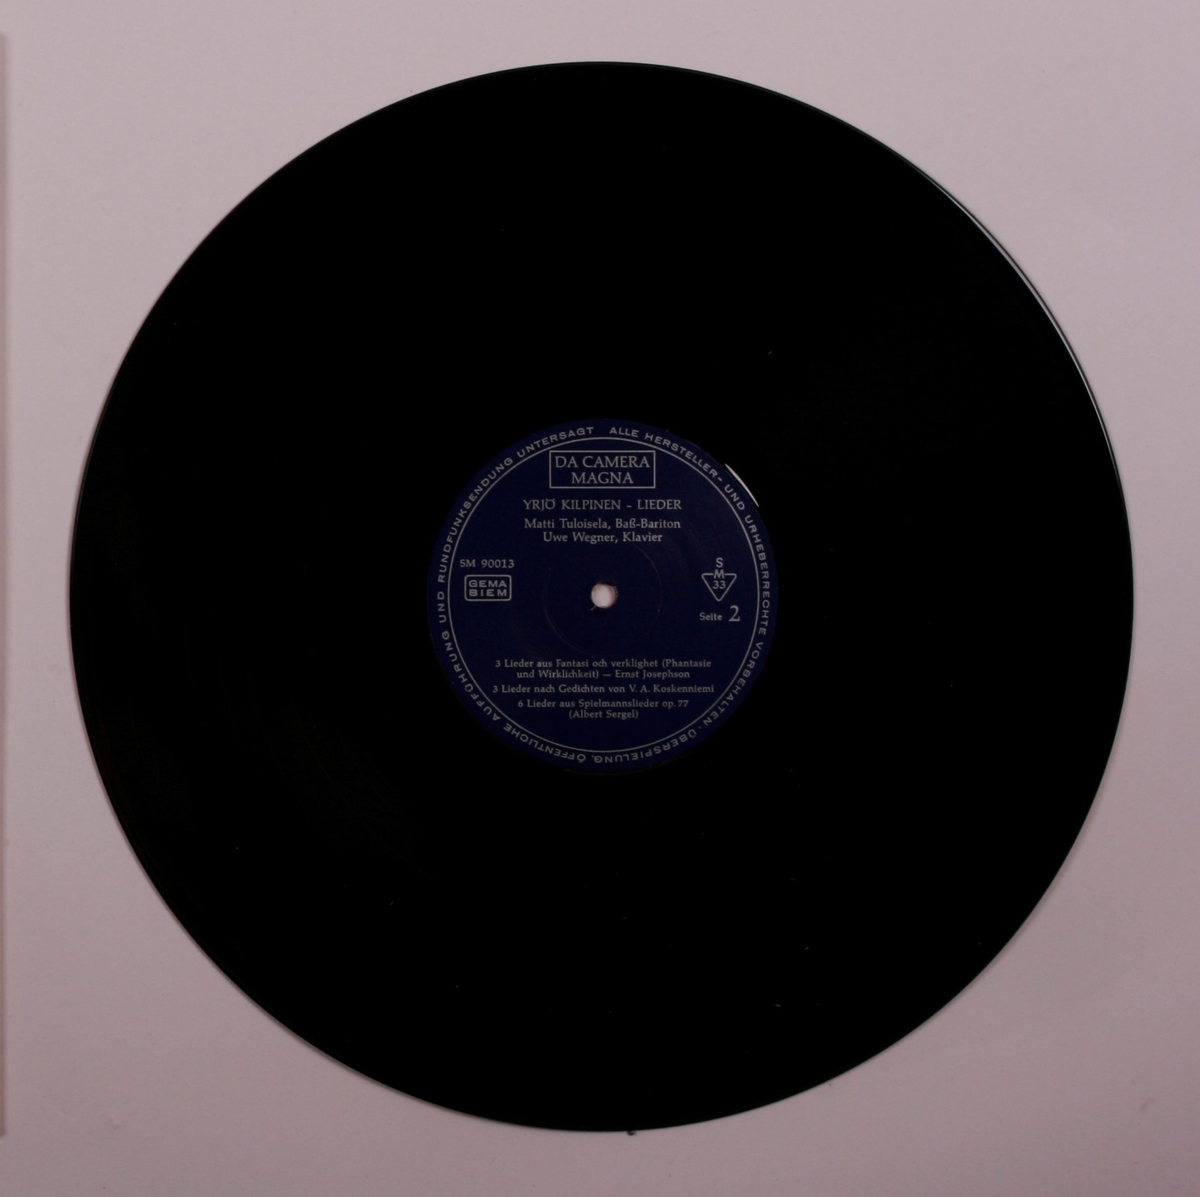 Grammofonplate i svart vinyl og plateomslag i papp. Plata ligger i en papirlomme.
